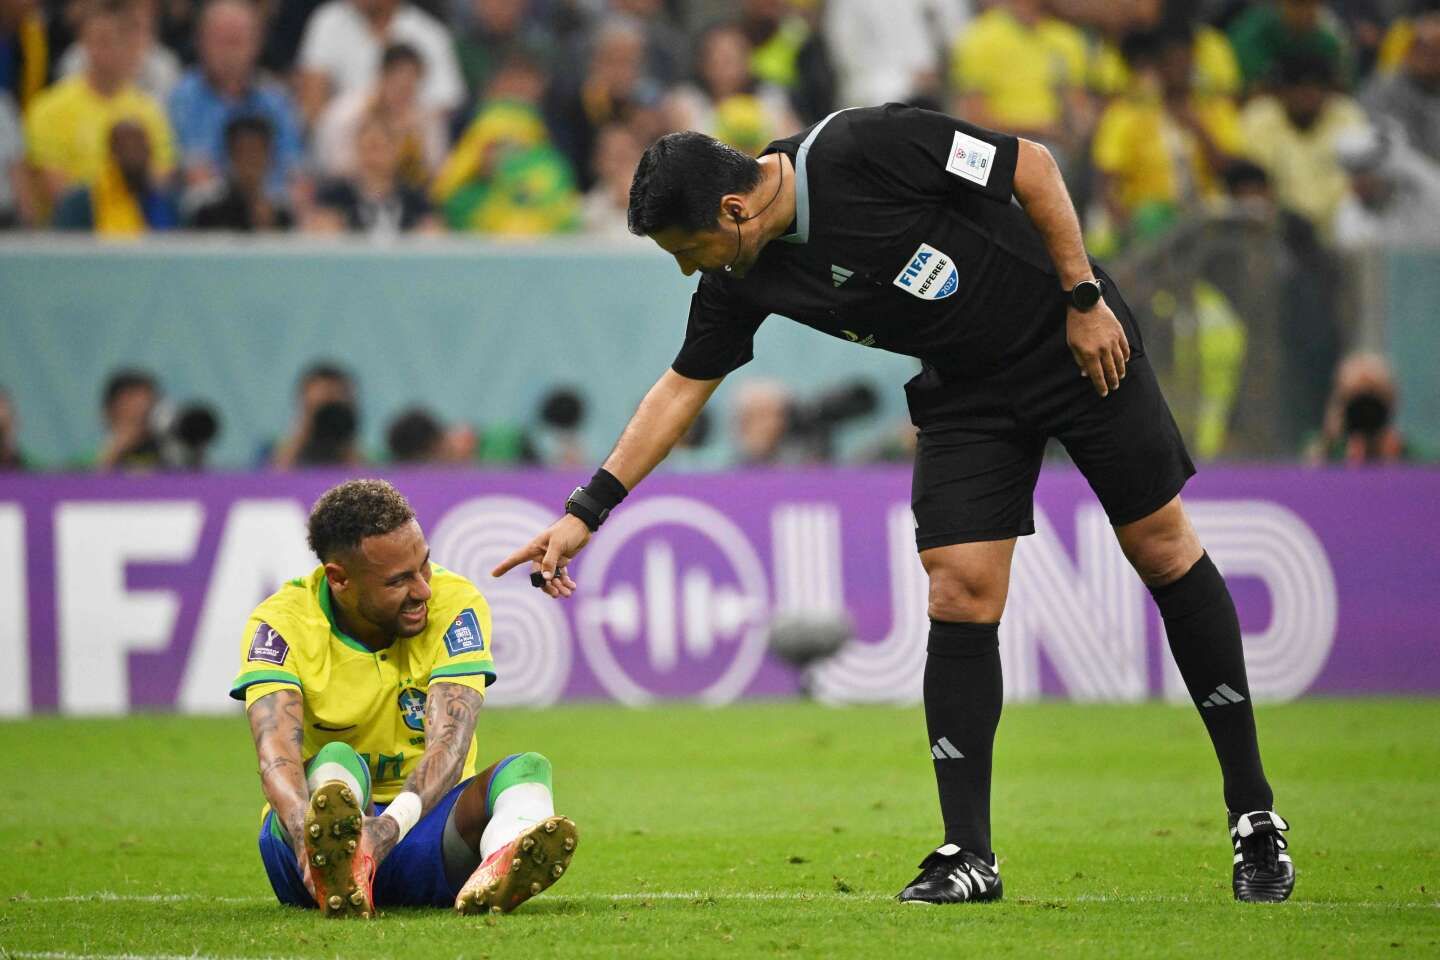 Coupe du monde 2022 : victorieux de la Serbie, le Brsil sinquite pour Neymar, victime dune entorse  la cheville